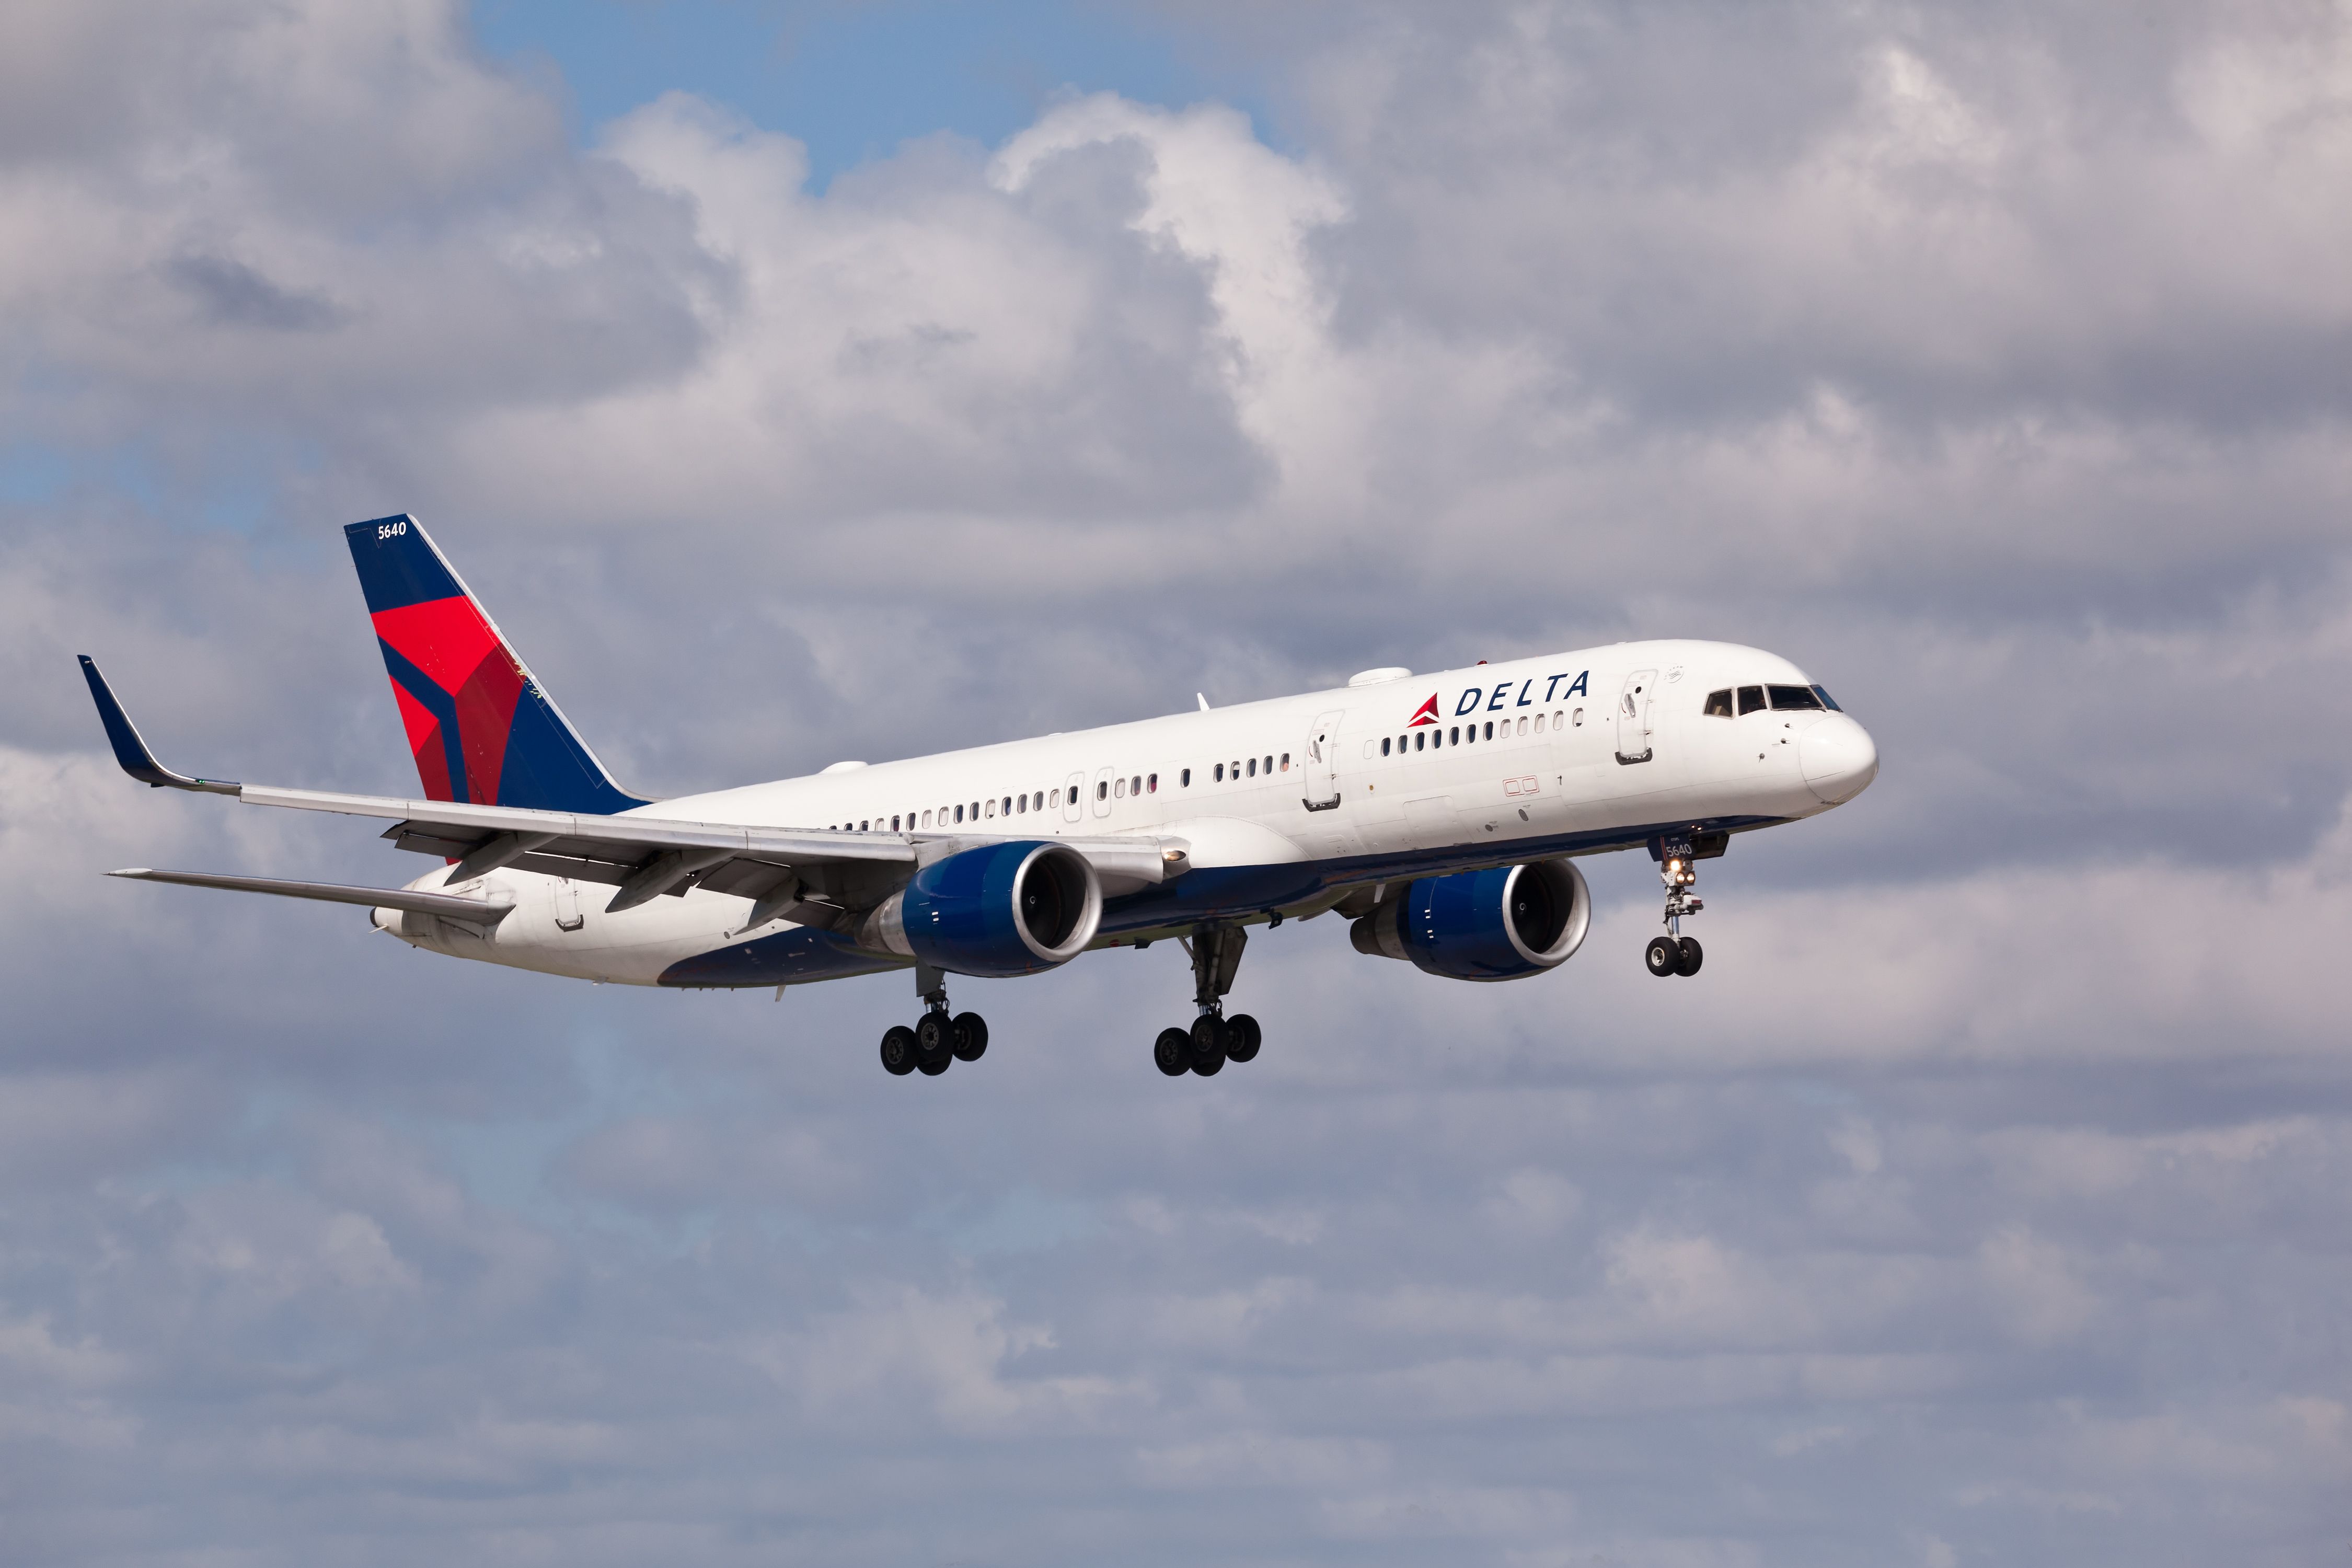 Delta Air Lines Boeing 757-200 landing in Fort Lauderdale.